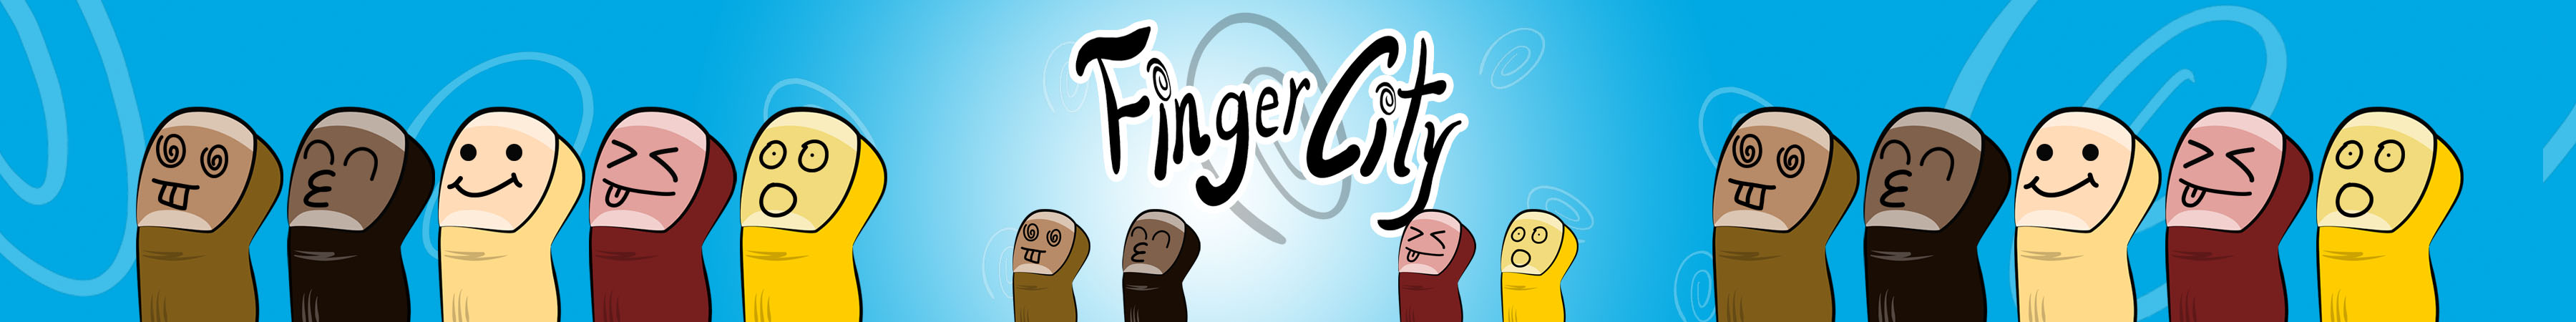 FingerCity